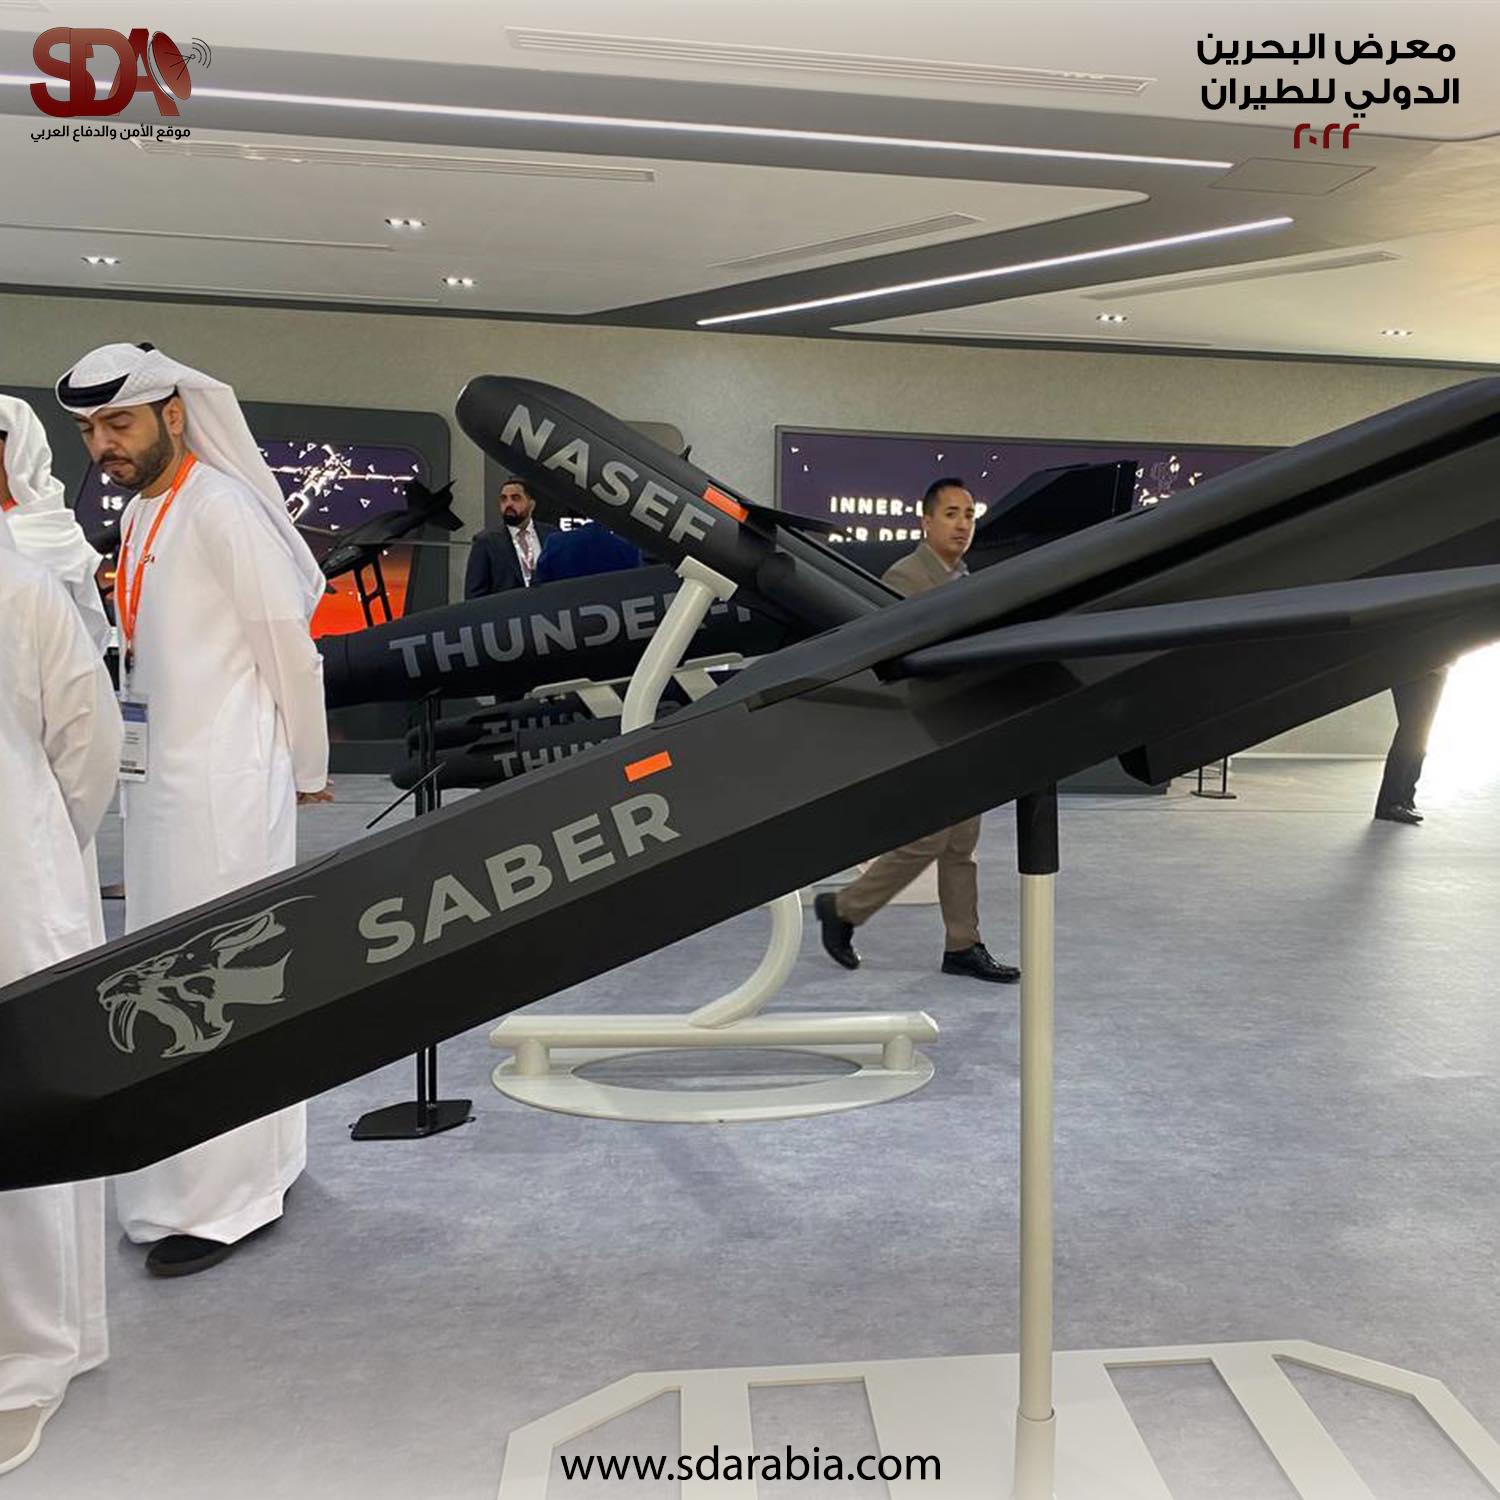 صاروخ Saber عرضته مجموعة إيدج في معرض البحرين الدولي للطيران